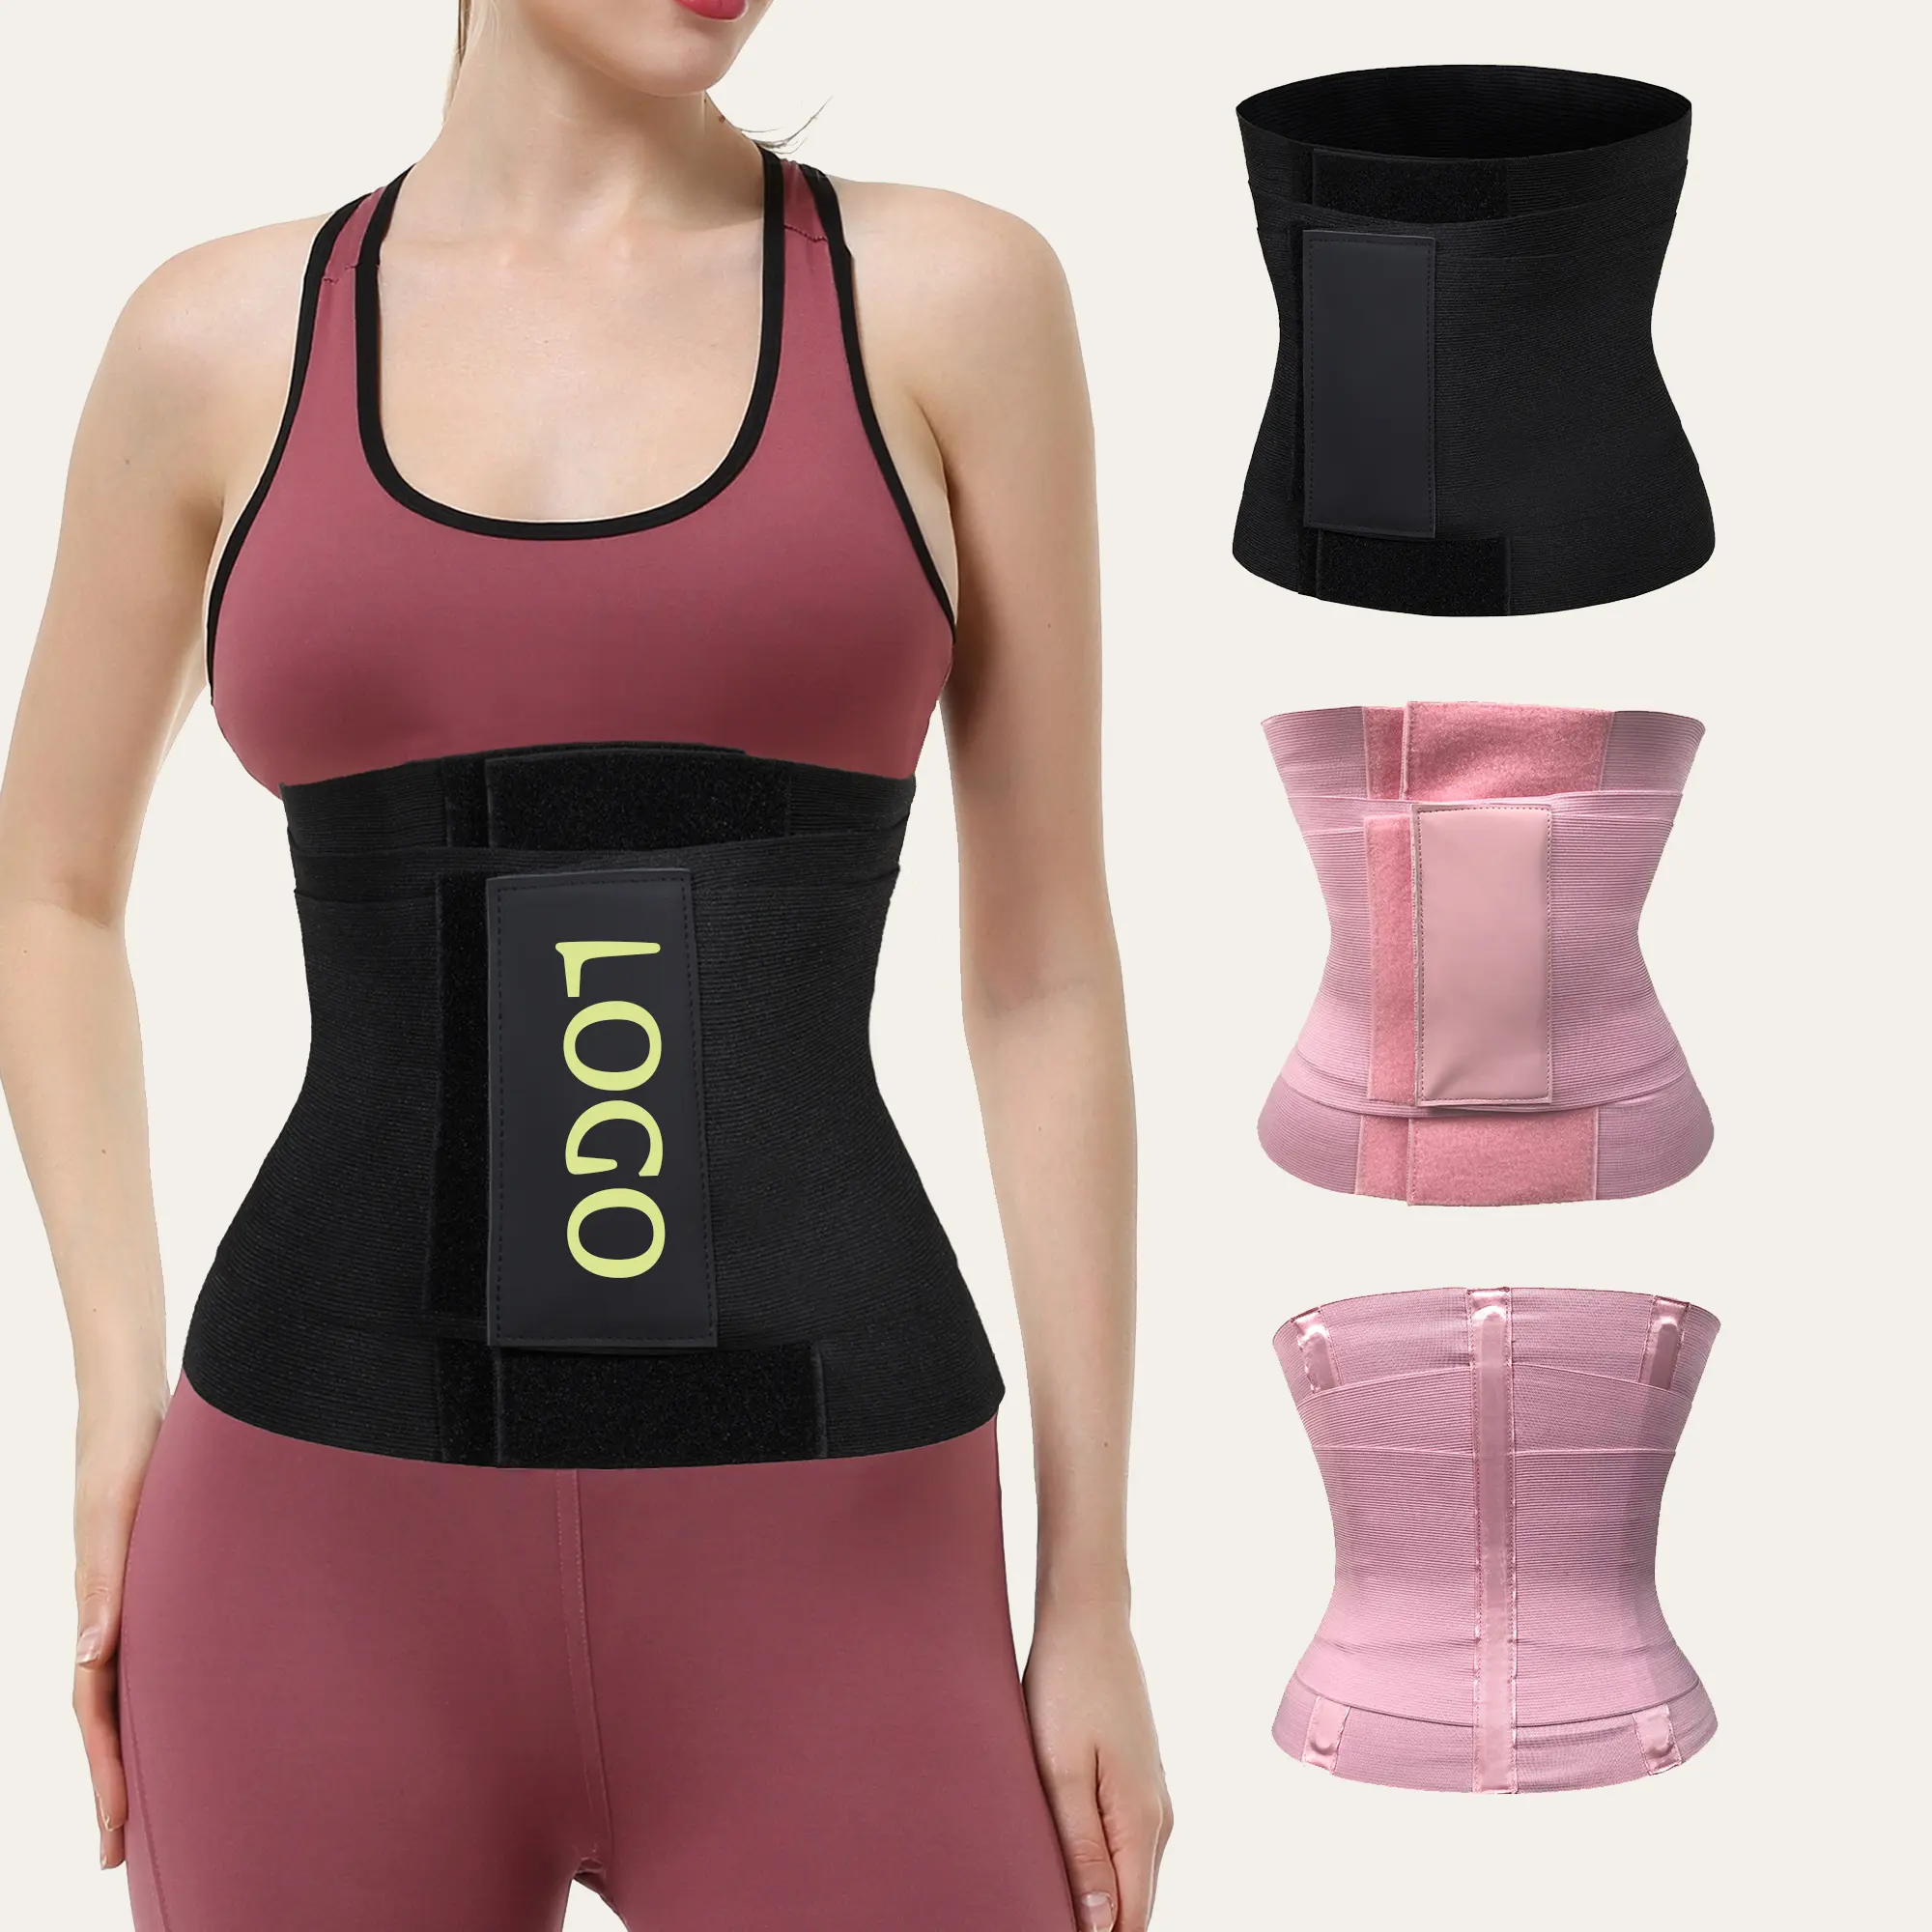 Тренировочная одежда для талии на бедра, Женские Корректирующие фигуры 2021, настраиваемый дизайн тела 3 в 1, OEM, изготовление под заказ, защита от логотипа